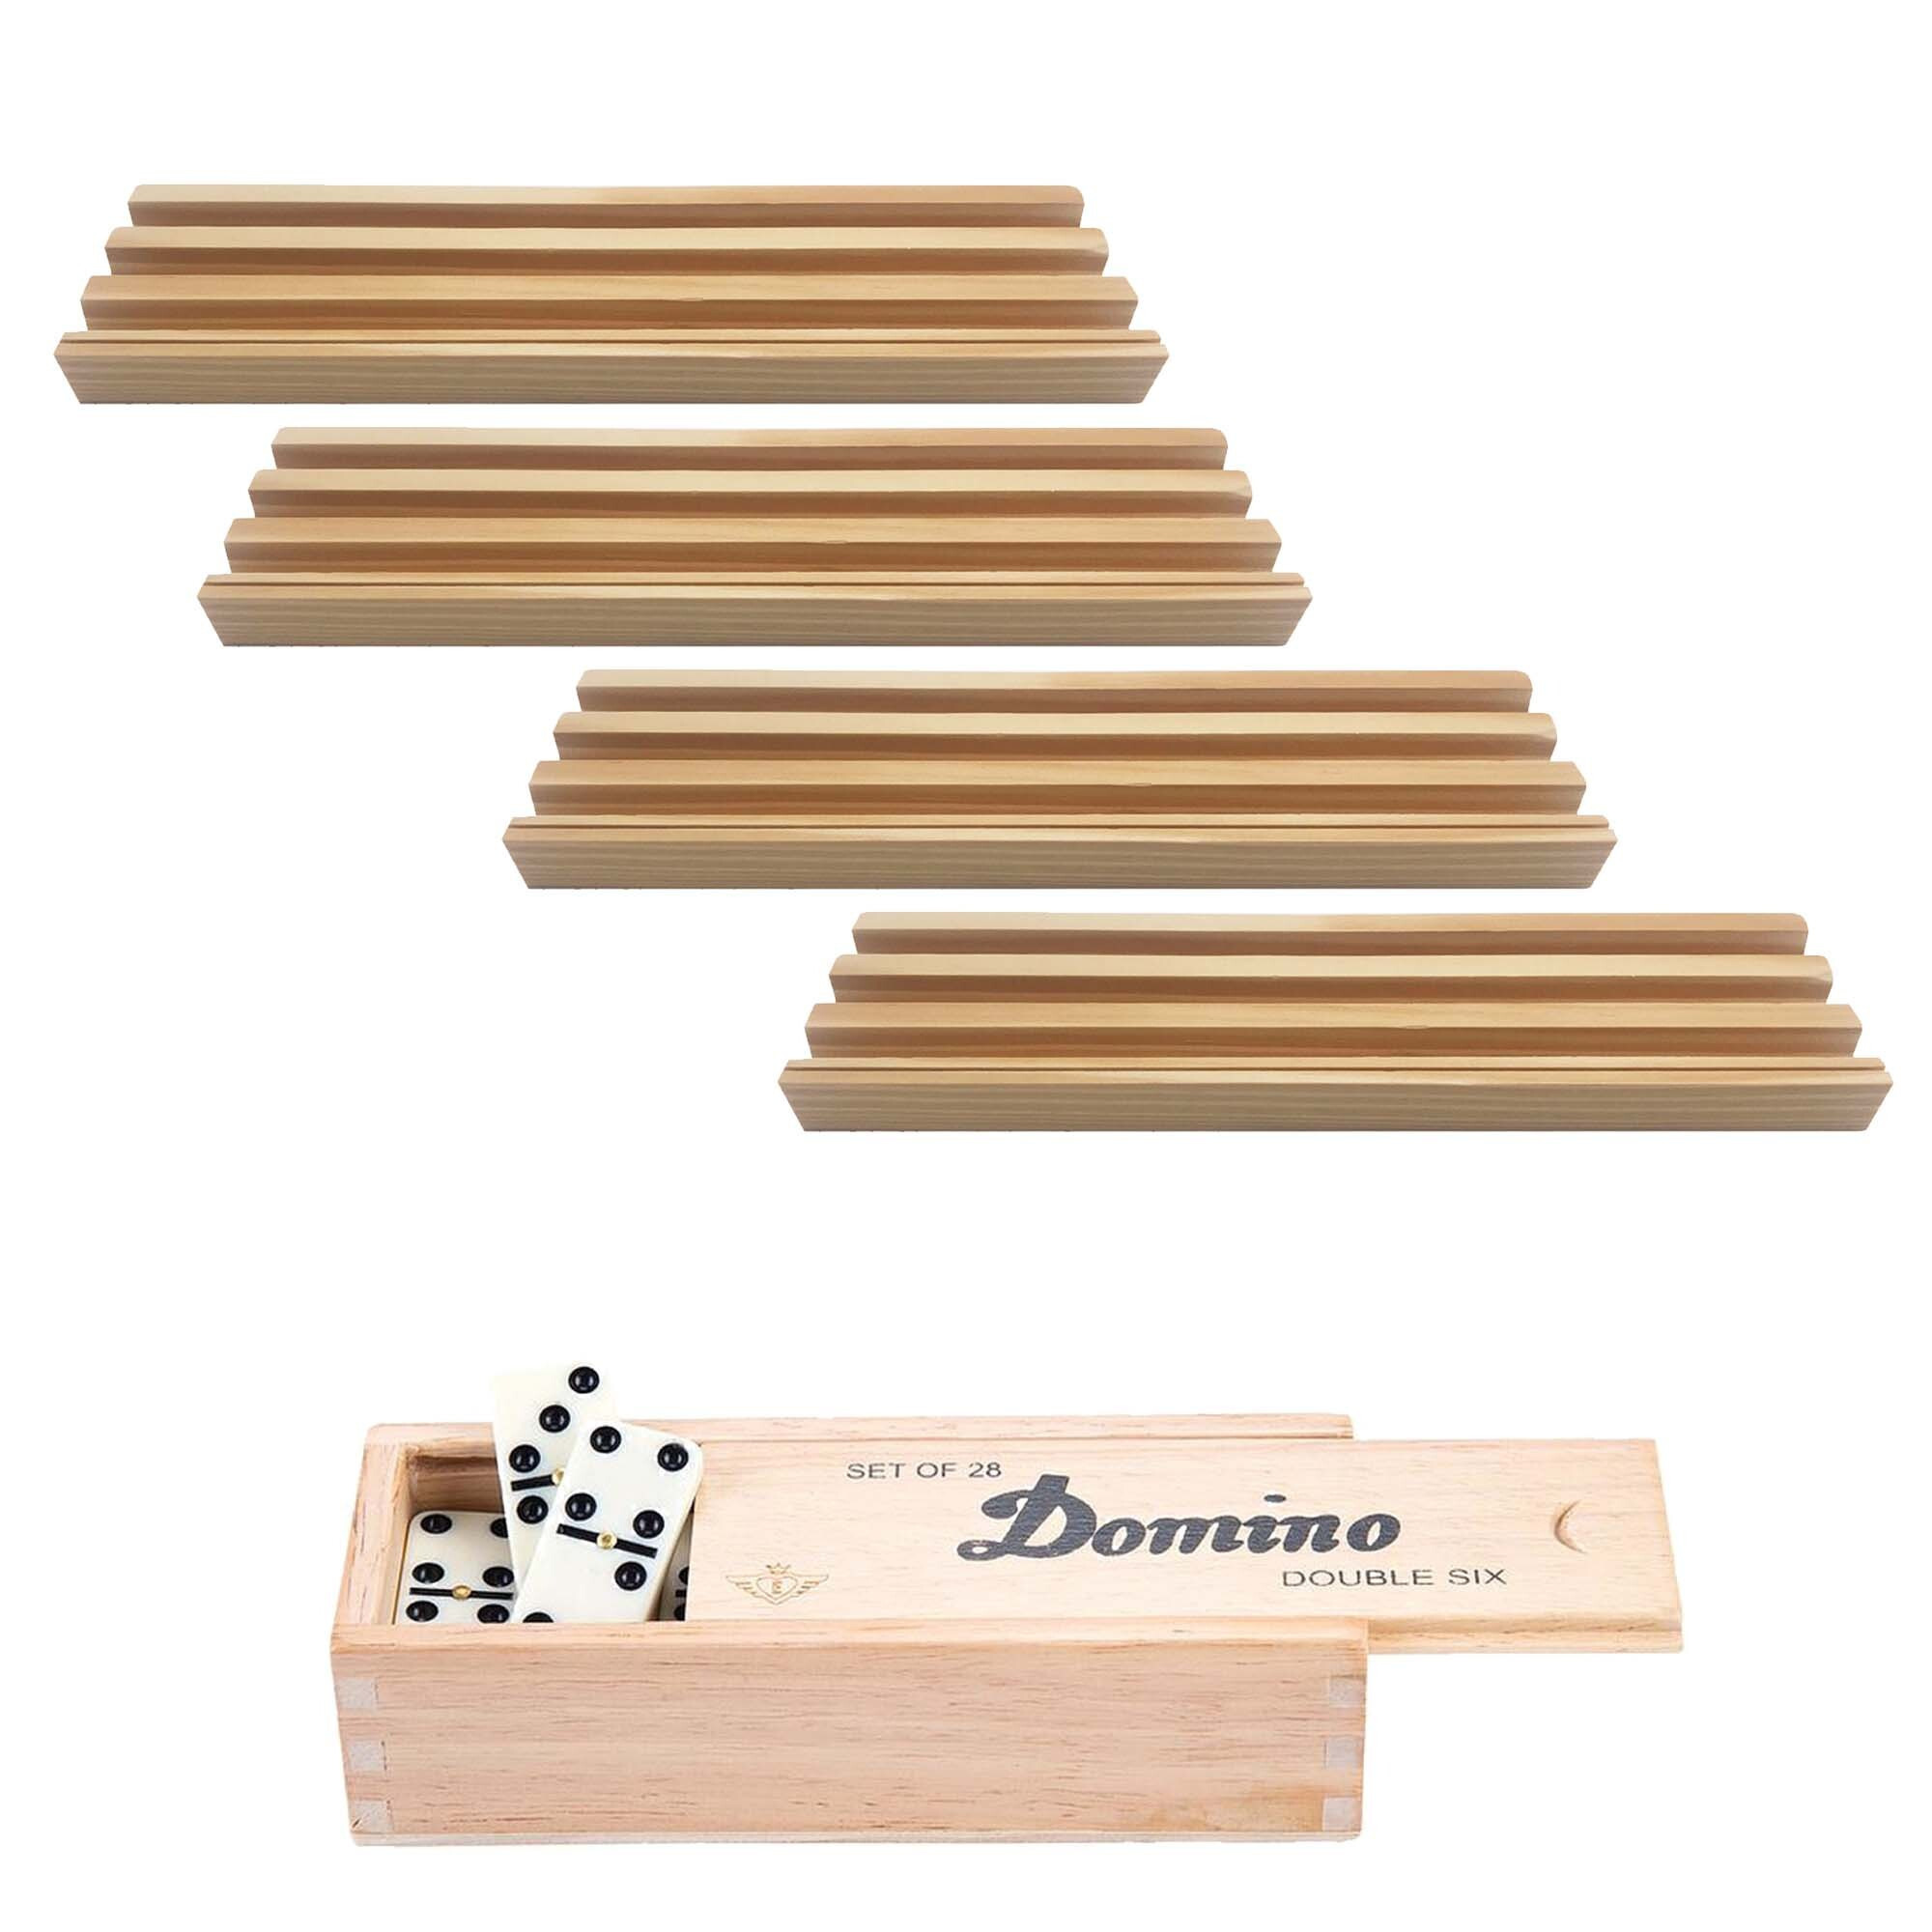 4x Dominostenenhouder met domino spel in houten doos 28x stenen - Kaarthouders - Standaarden